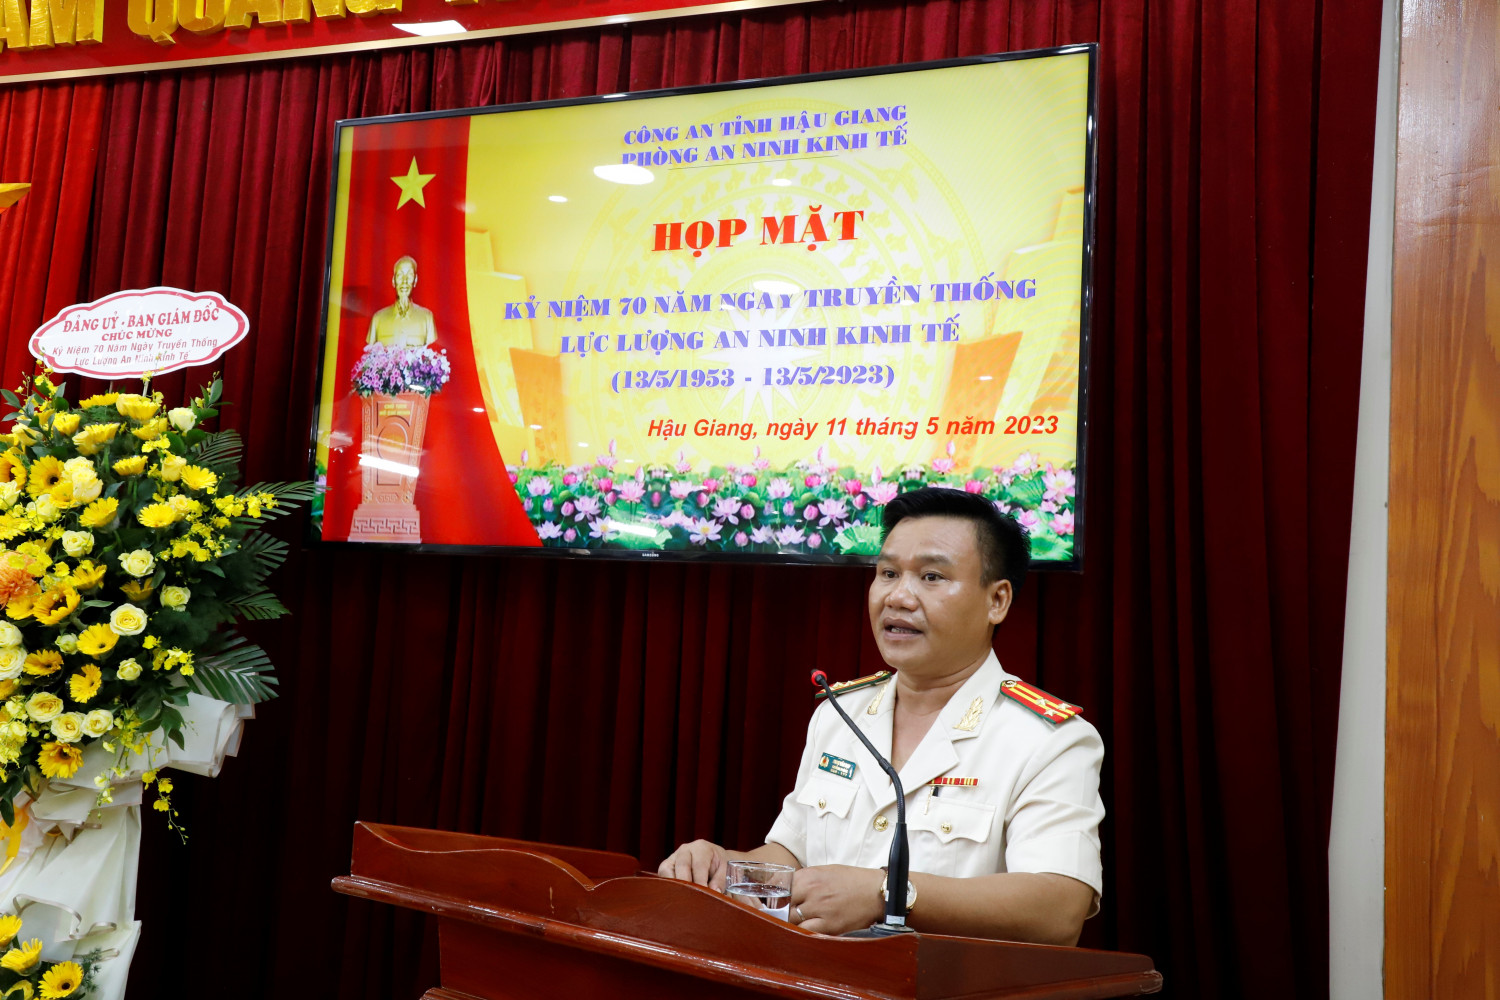 Đồng chí Thượng tá Phan Văn Hạp, Trưởng phòng An ninh kinh tế phát biểu kết thúc buổi họp mặt